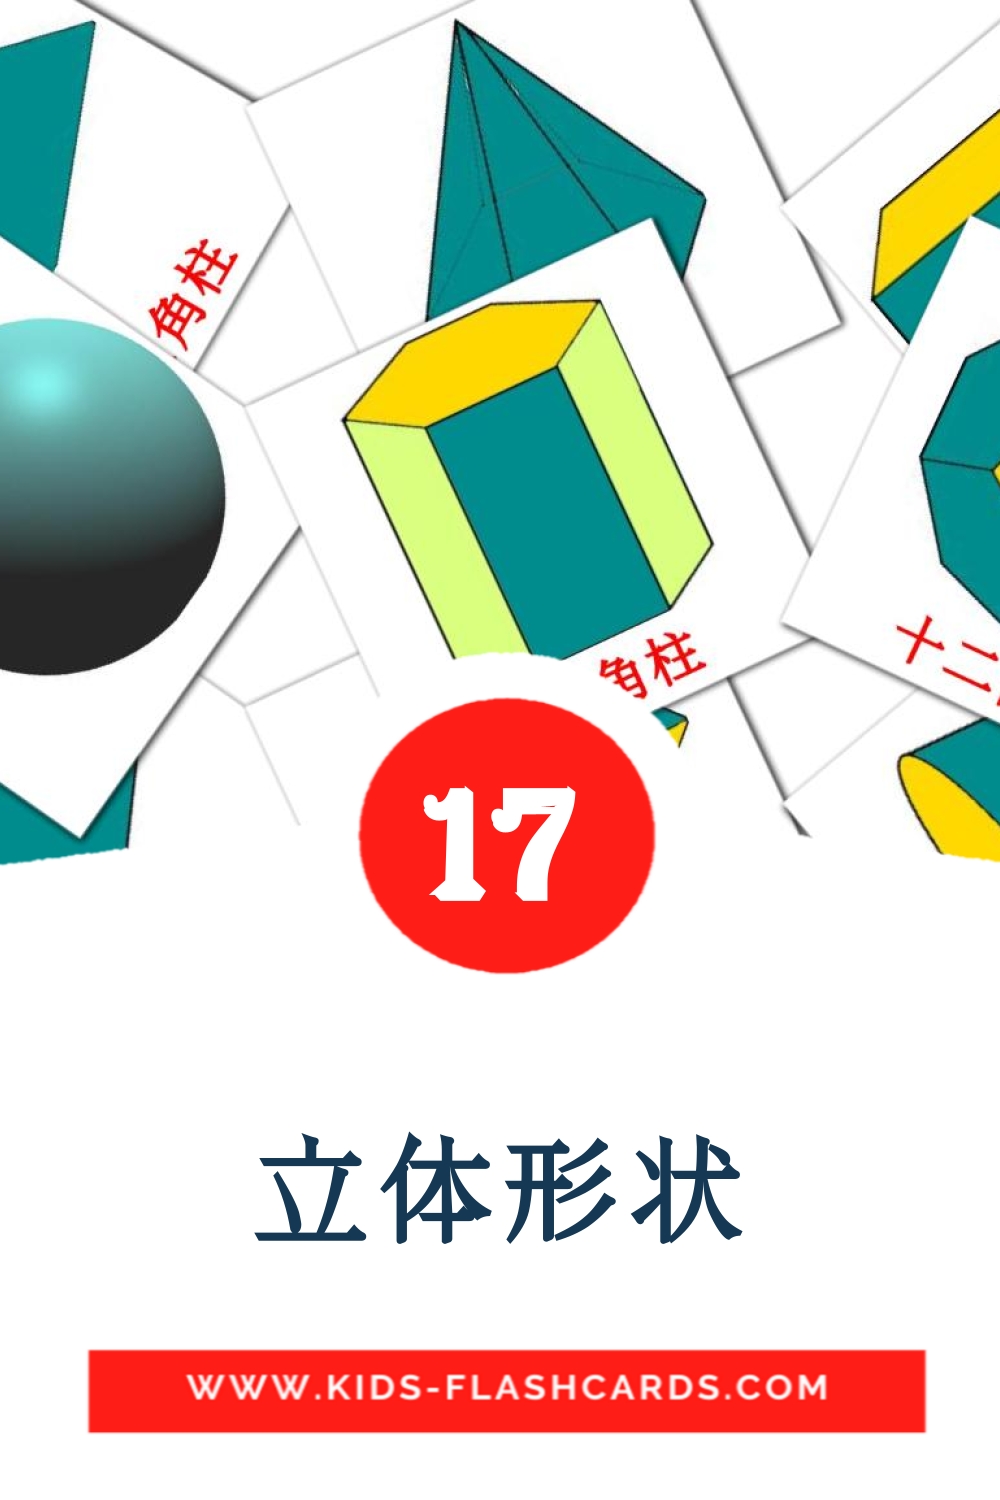 17 立体形状 Picture Cards for Kindergarden in chinese(Traditional)